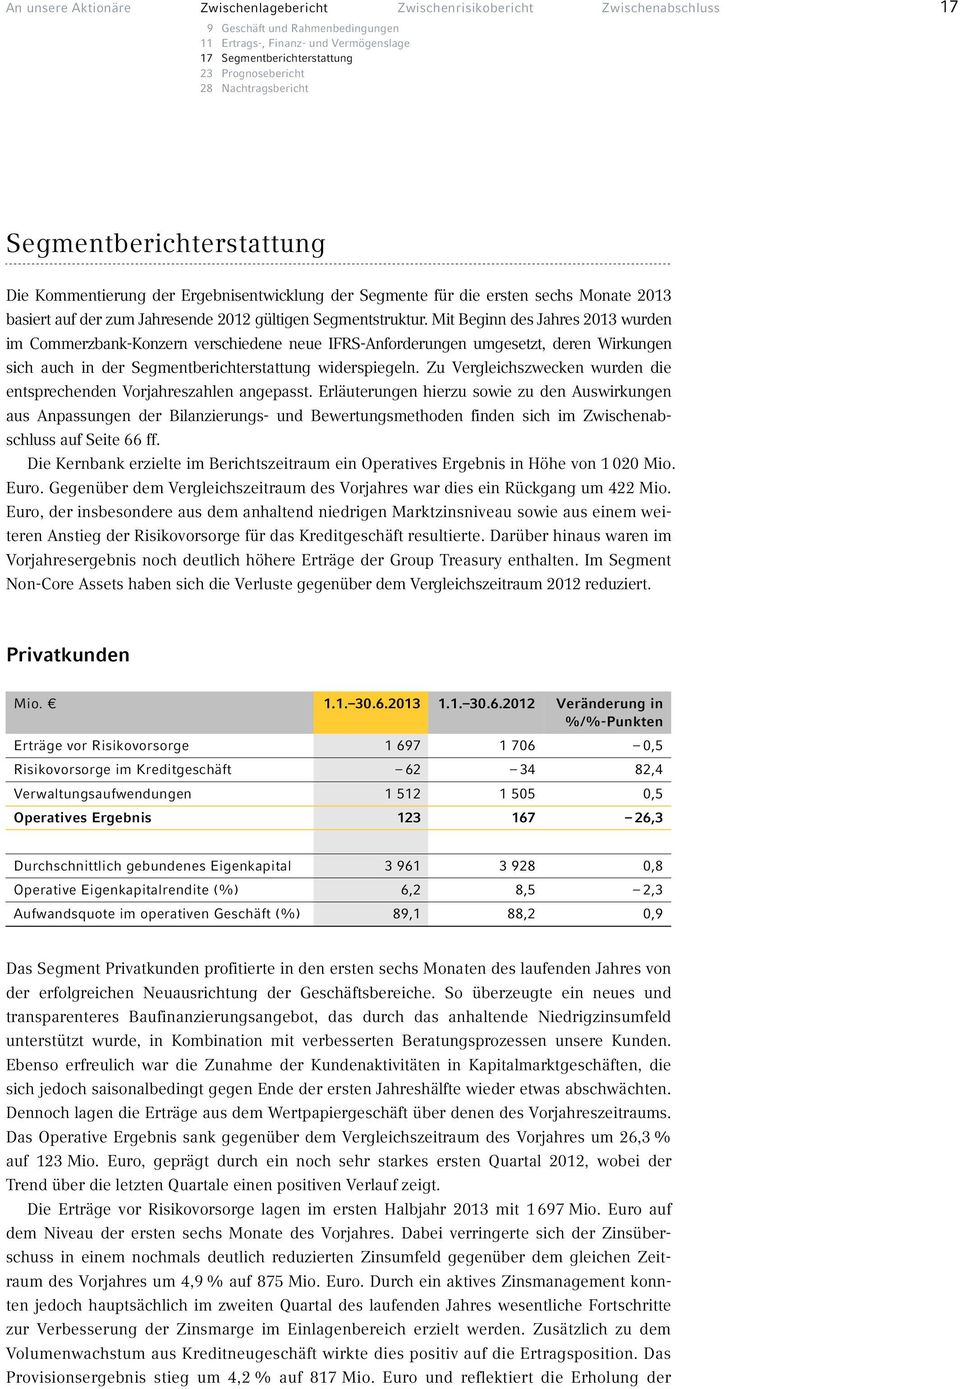 Segmentstruktur. Mit Beginn des Jahres 2013 wurden im Commerzbank-Konzern verschiedene neue IFRS-Anforderungen umgesetzt, deren Wirkungen sich auch in der Segmentberichterstattung widerspiegeln.